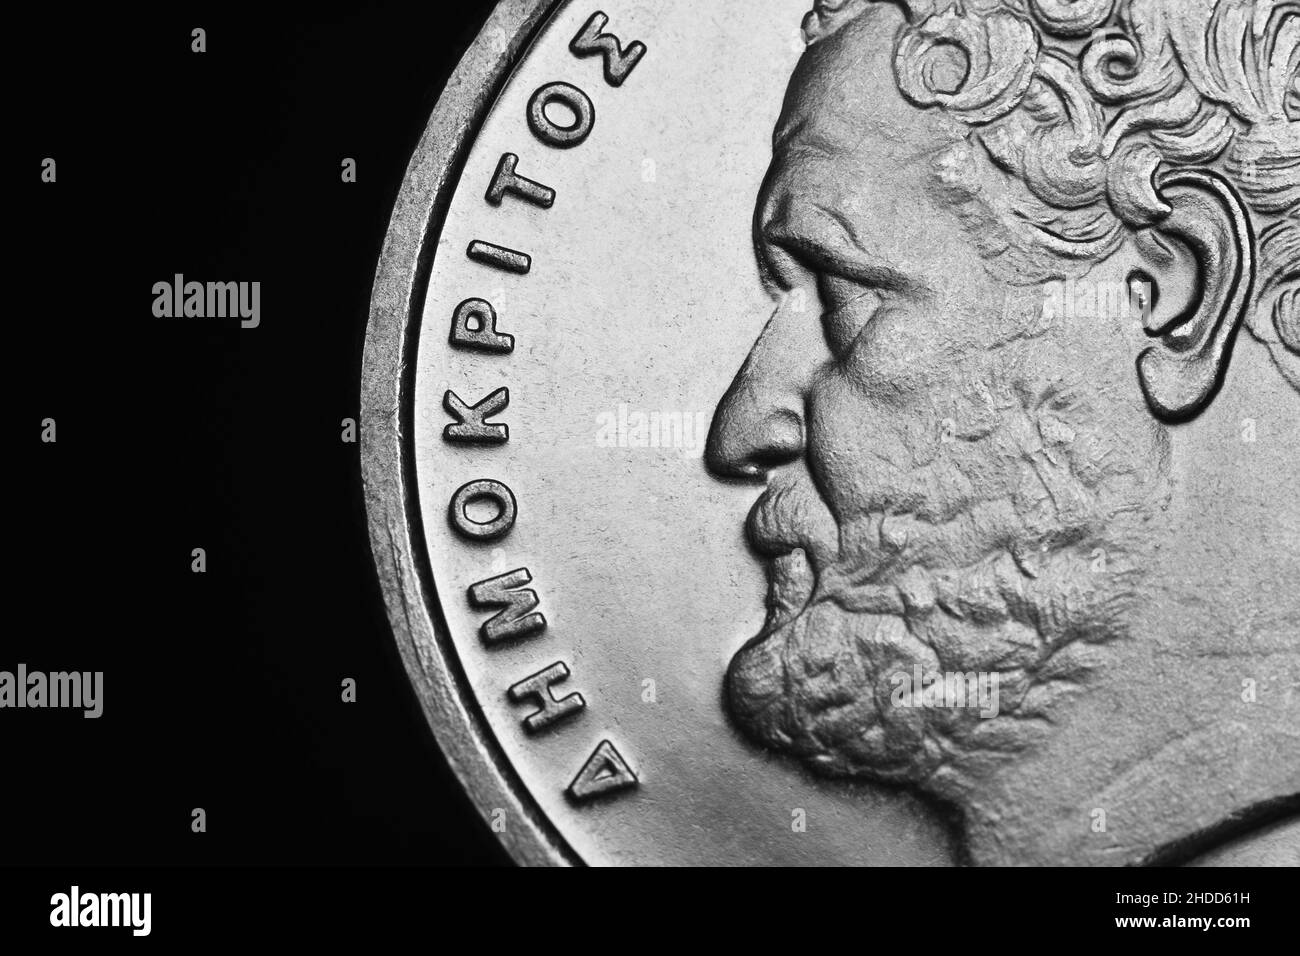 Coin Greco: Ritratto di Democrates da 10 dracma moneta di 2000 Foto Stock